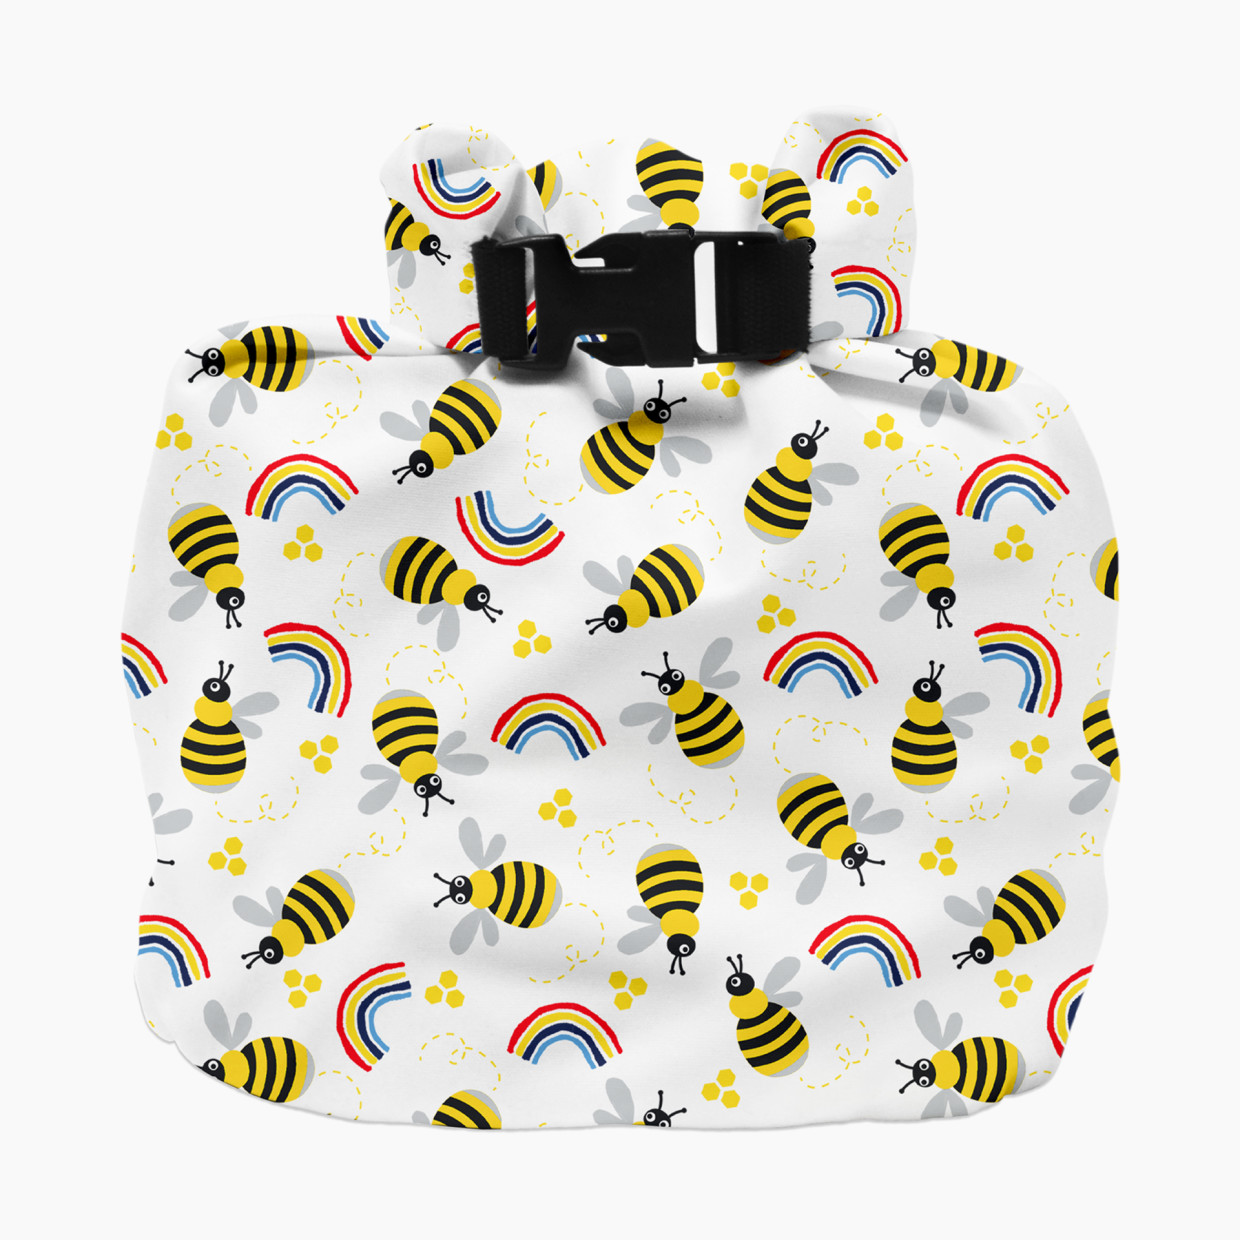 Bambino Mio Wet Bag - Honeybee Hive.